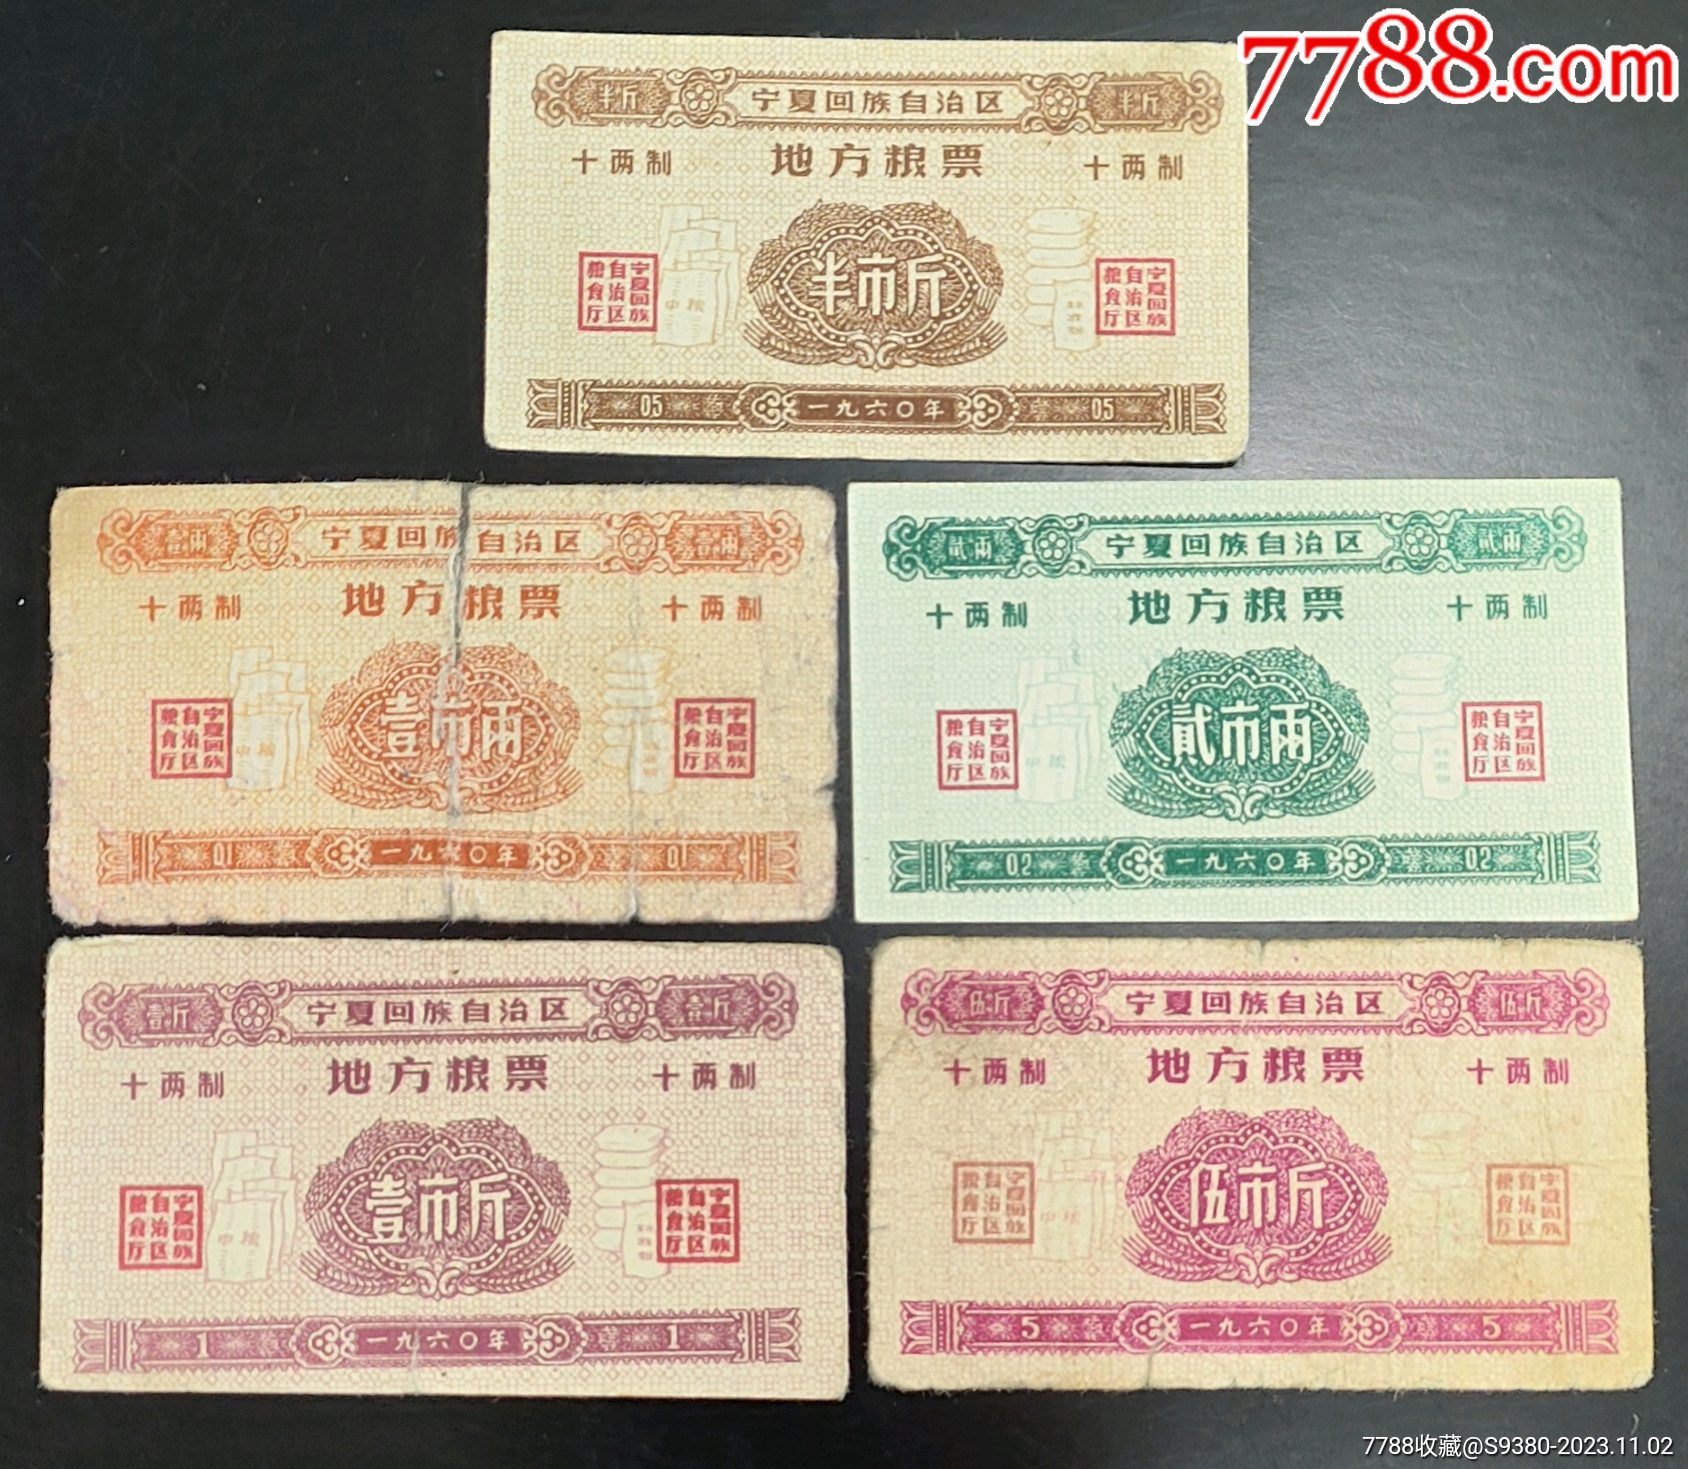 1960年宁夏回族自治区地方粮票5枚一套